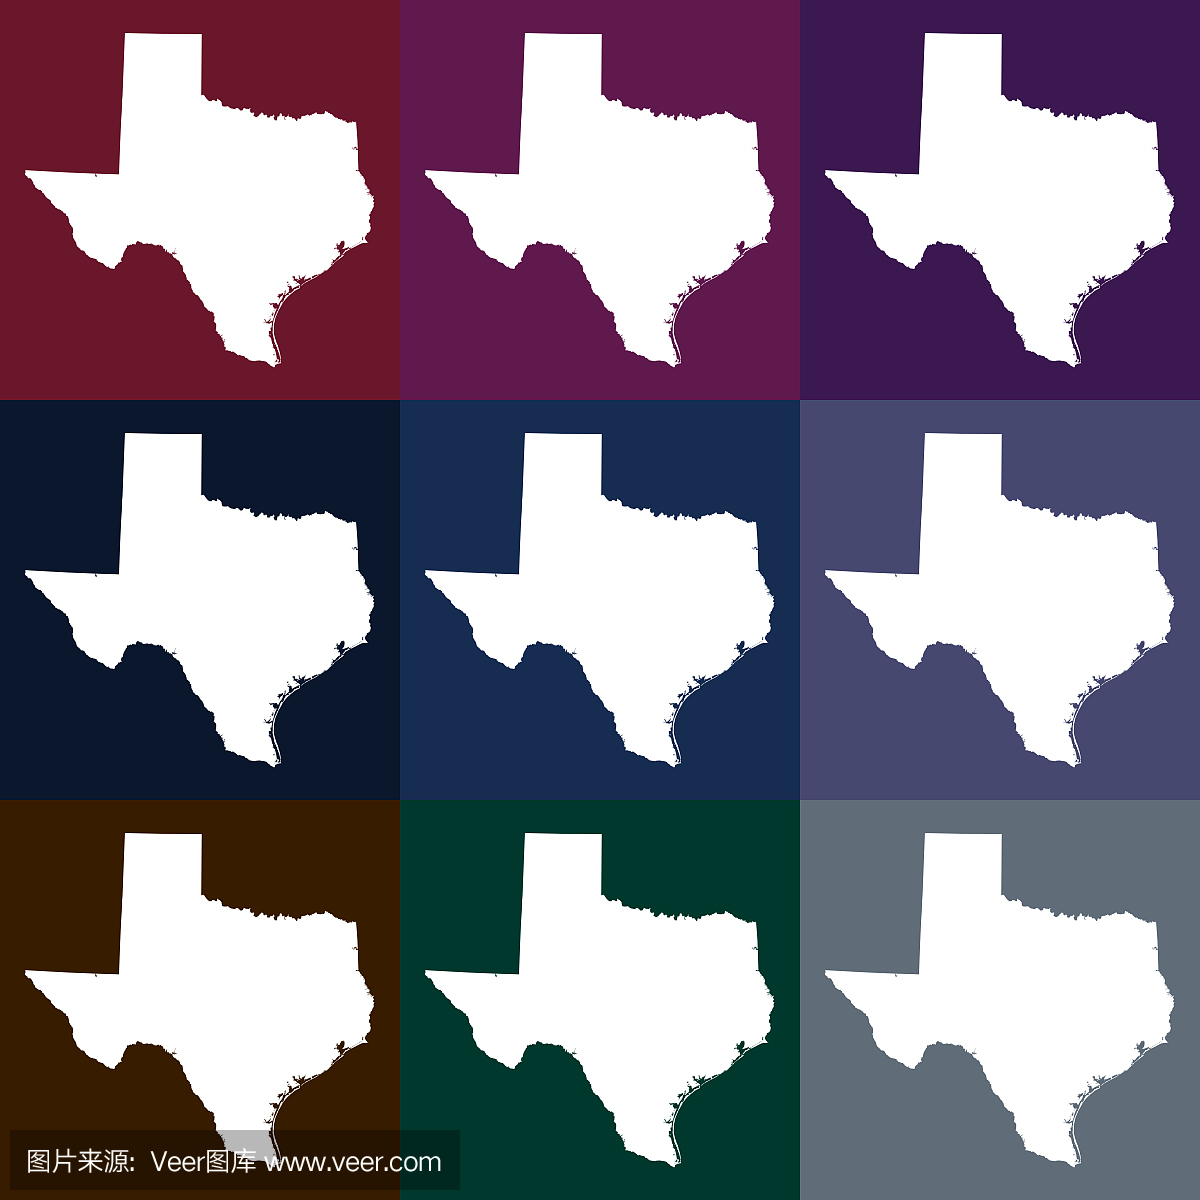 矢量图德克萨斯州,美国地图在深色